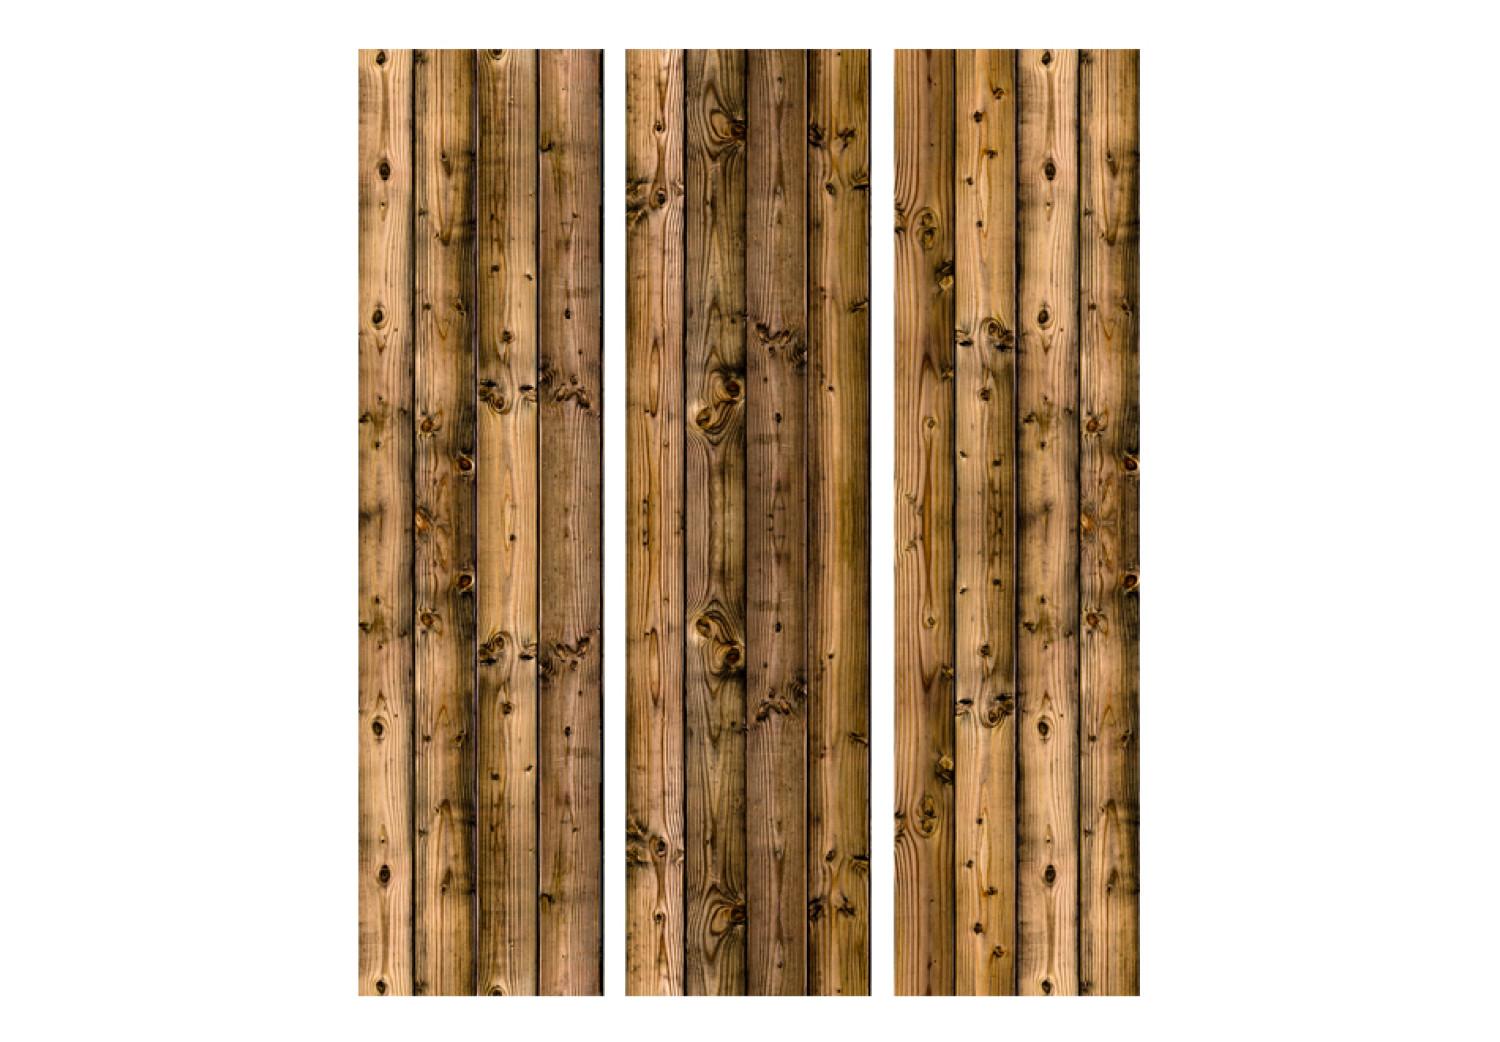 Biombo Cabaña de campo - textura de tablas de madera marrón oscuro